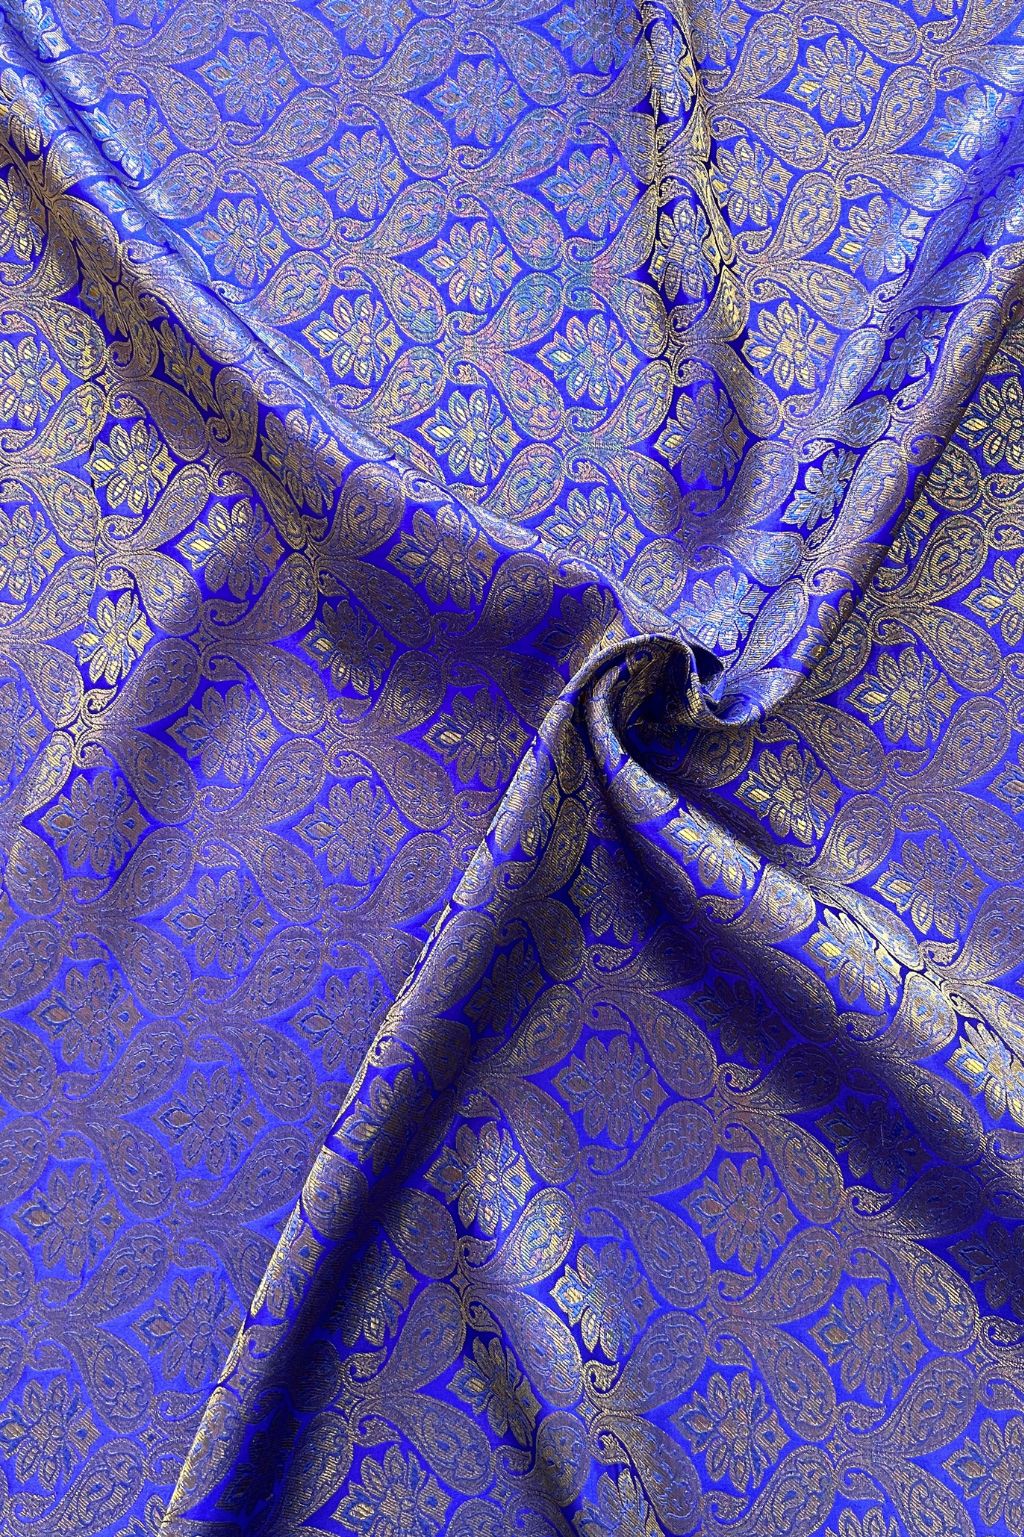 Ladies Banarasi Loose Fabric (£5.00/metre)